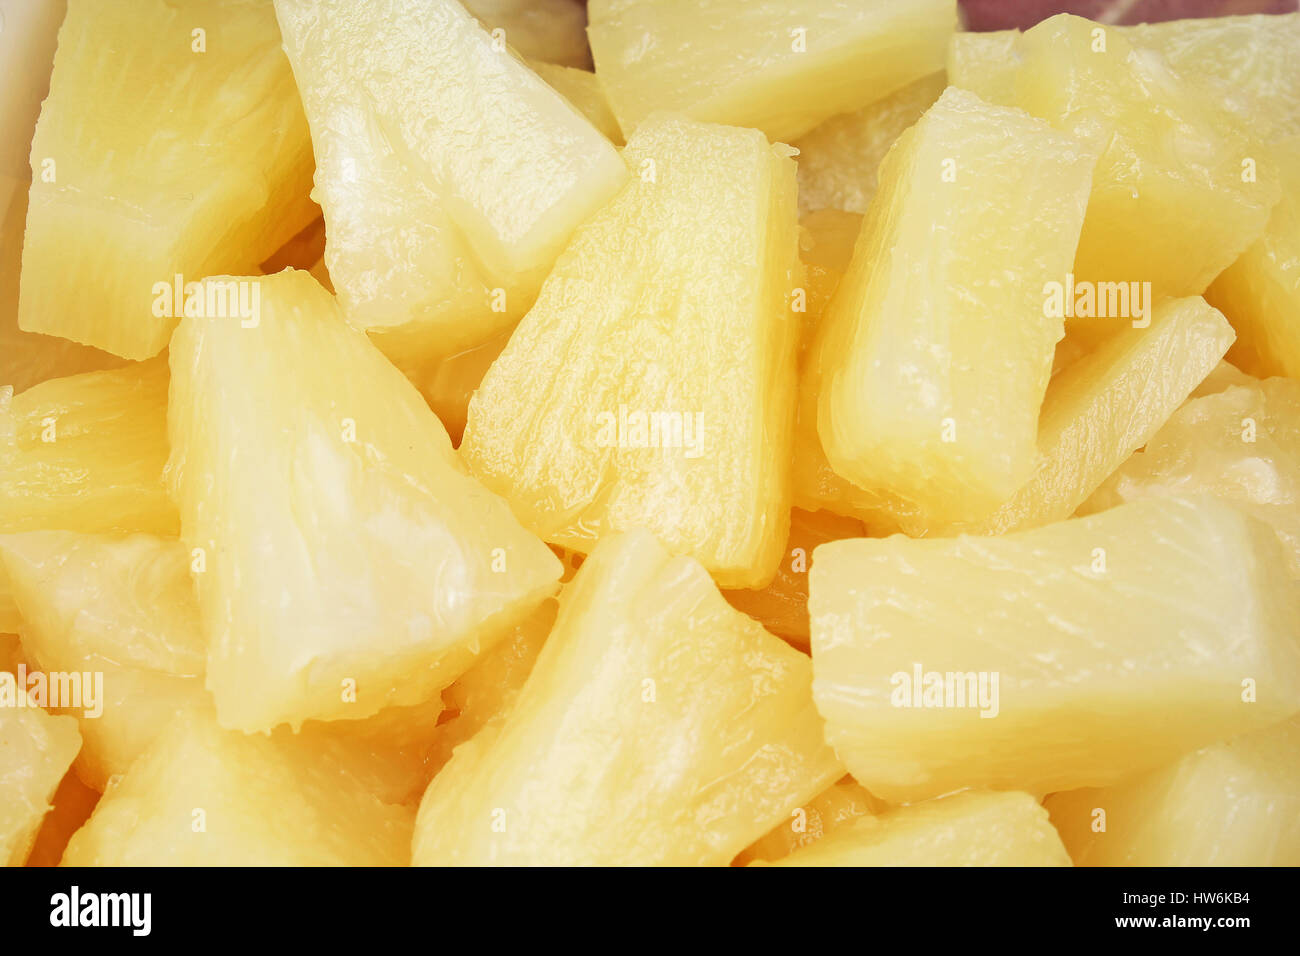 Pineapple slices. Stock Photo